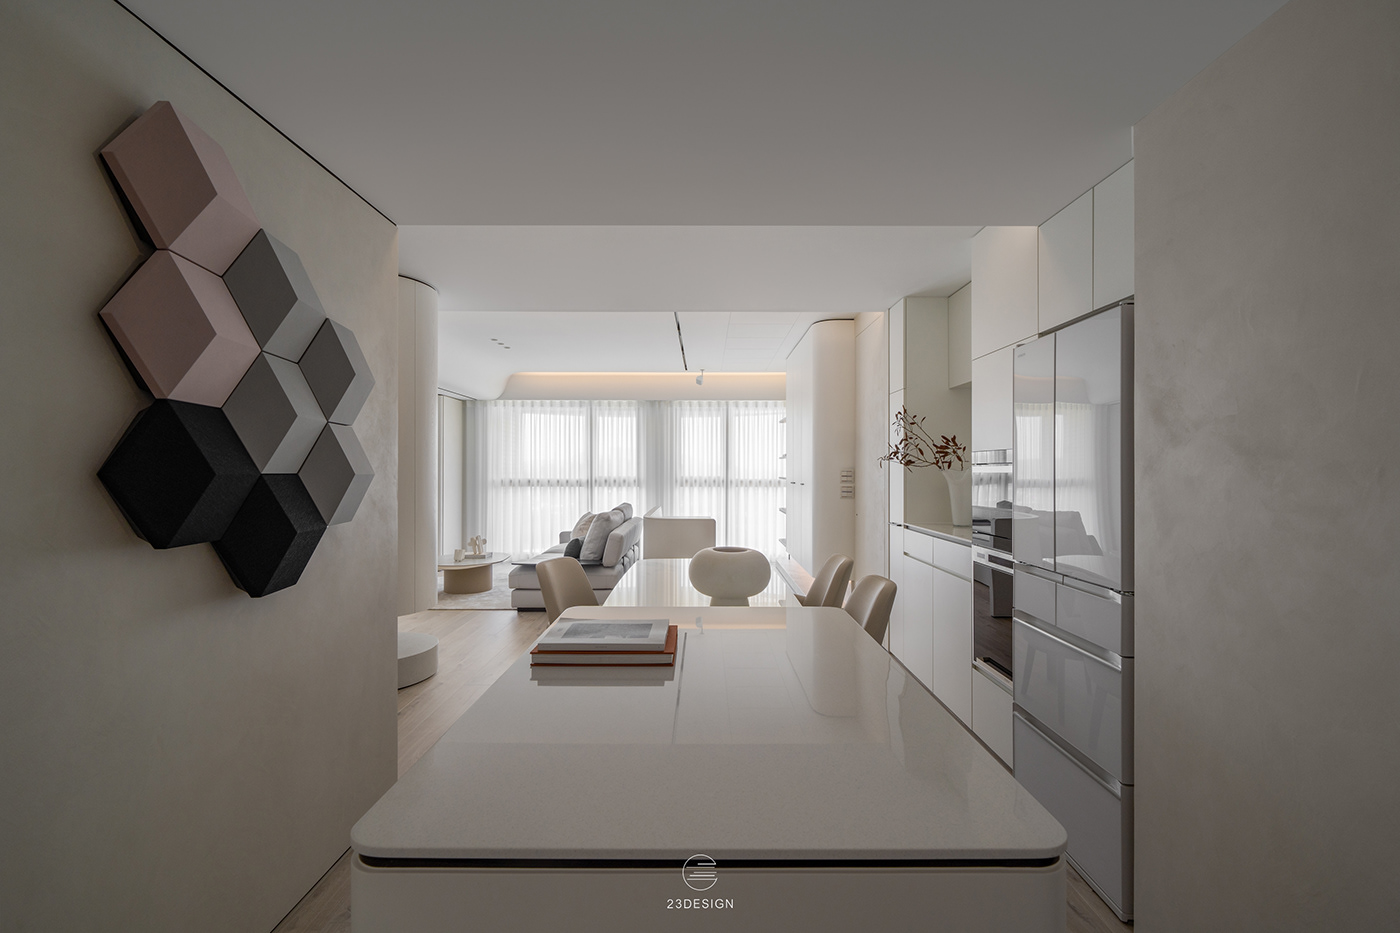 Interior interior design  architecture residential 23design pohotography 画册设计